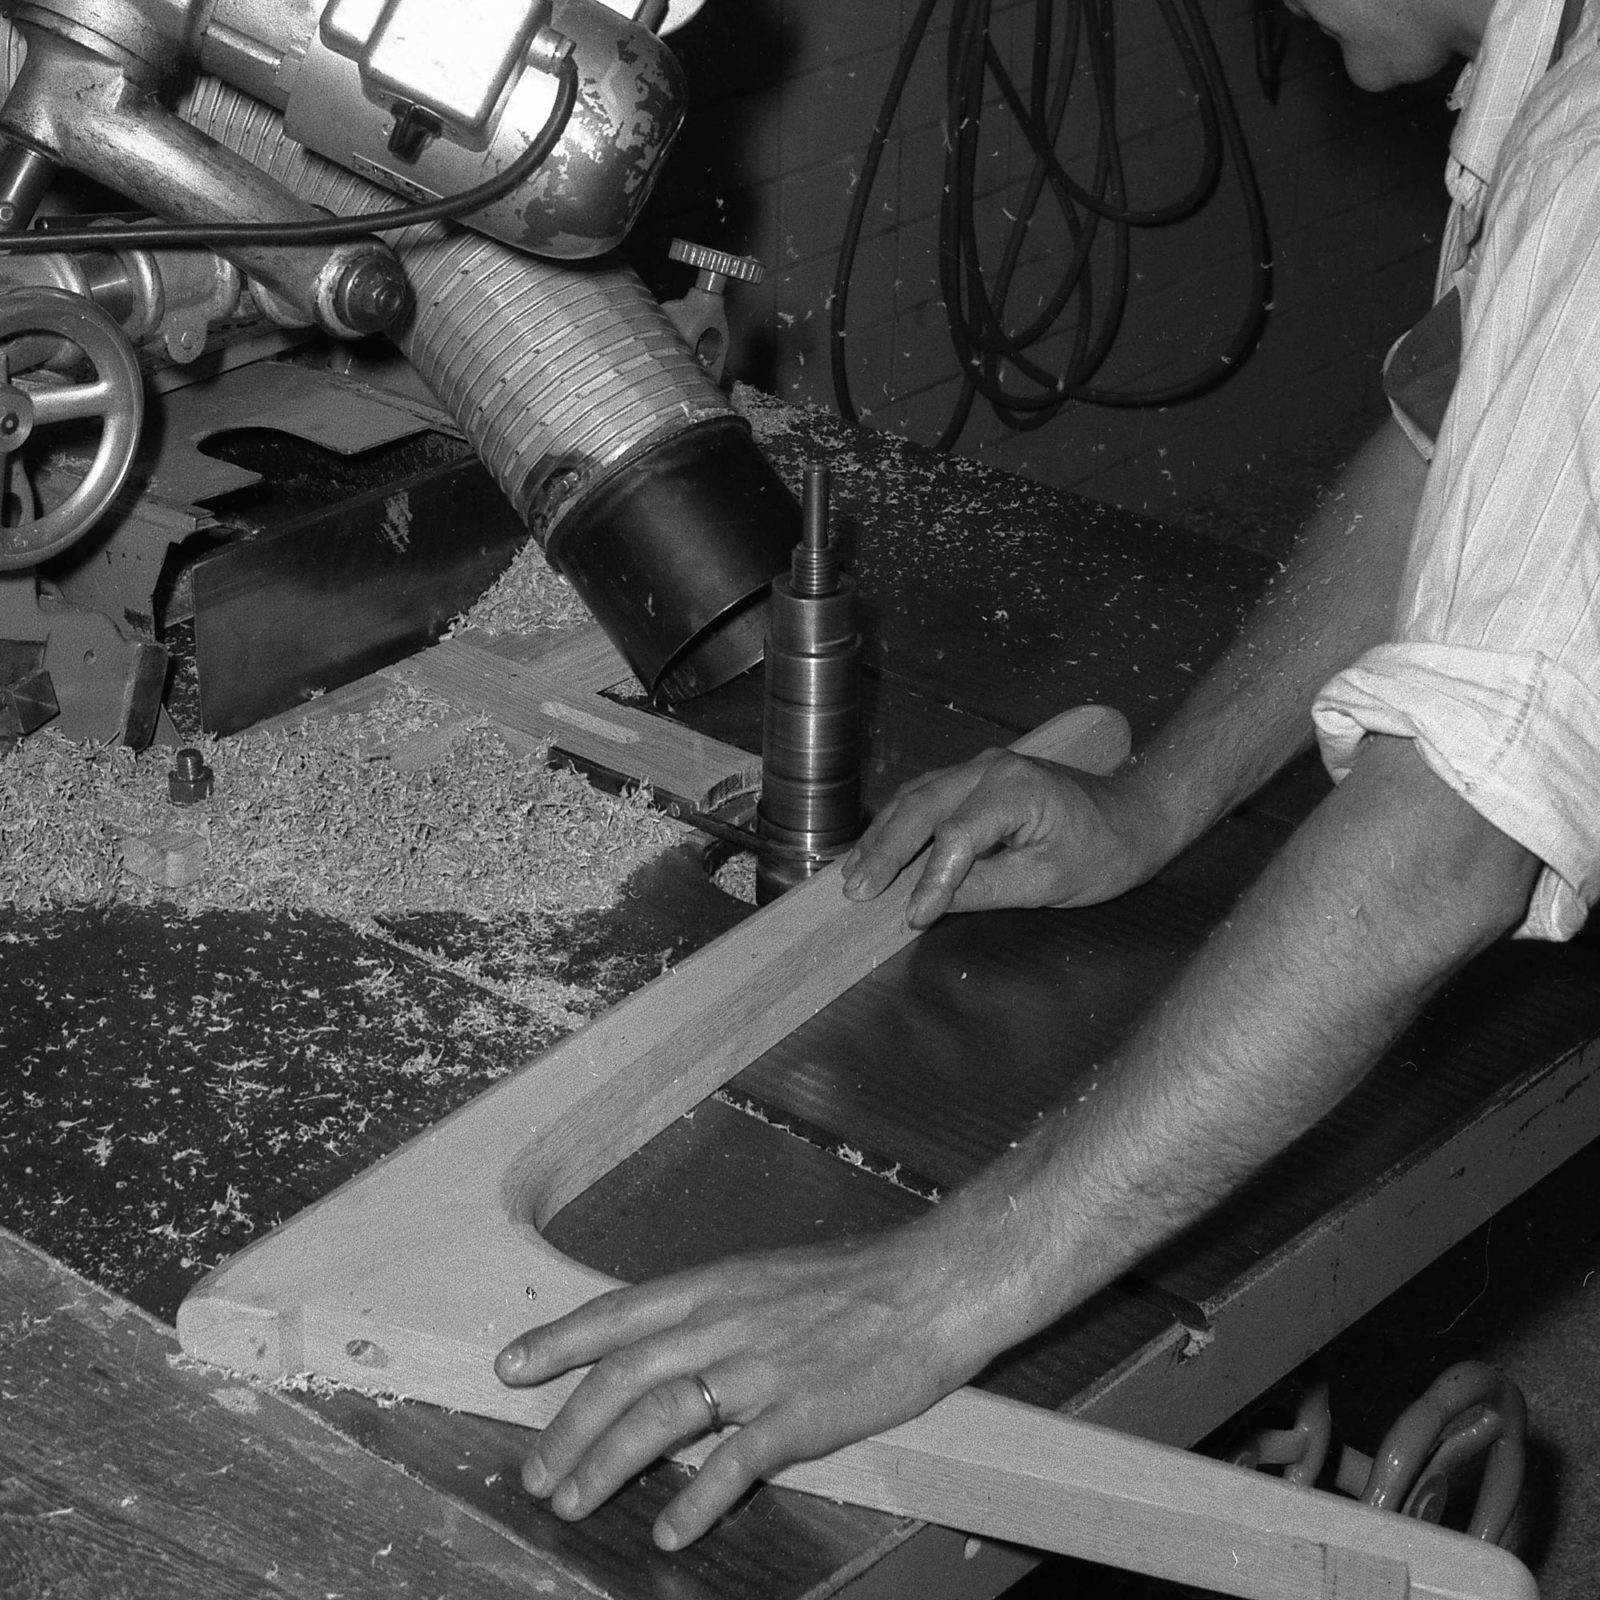 Un hombre trabaja con una pieza de madera en la pulidora, años 40.